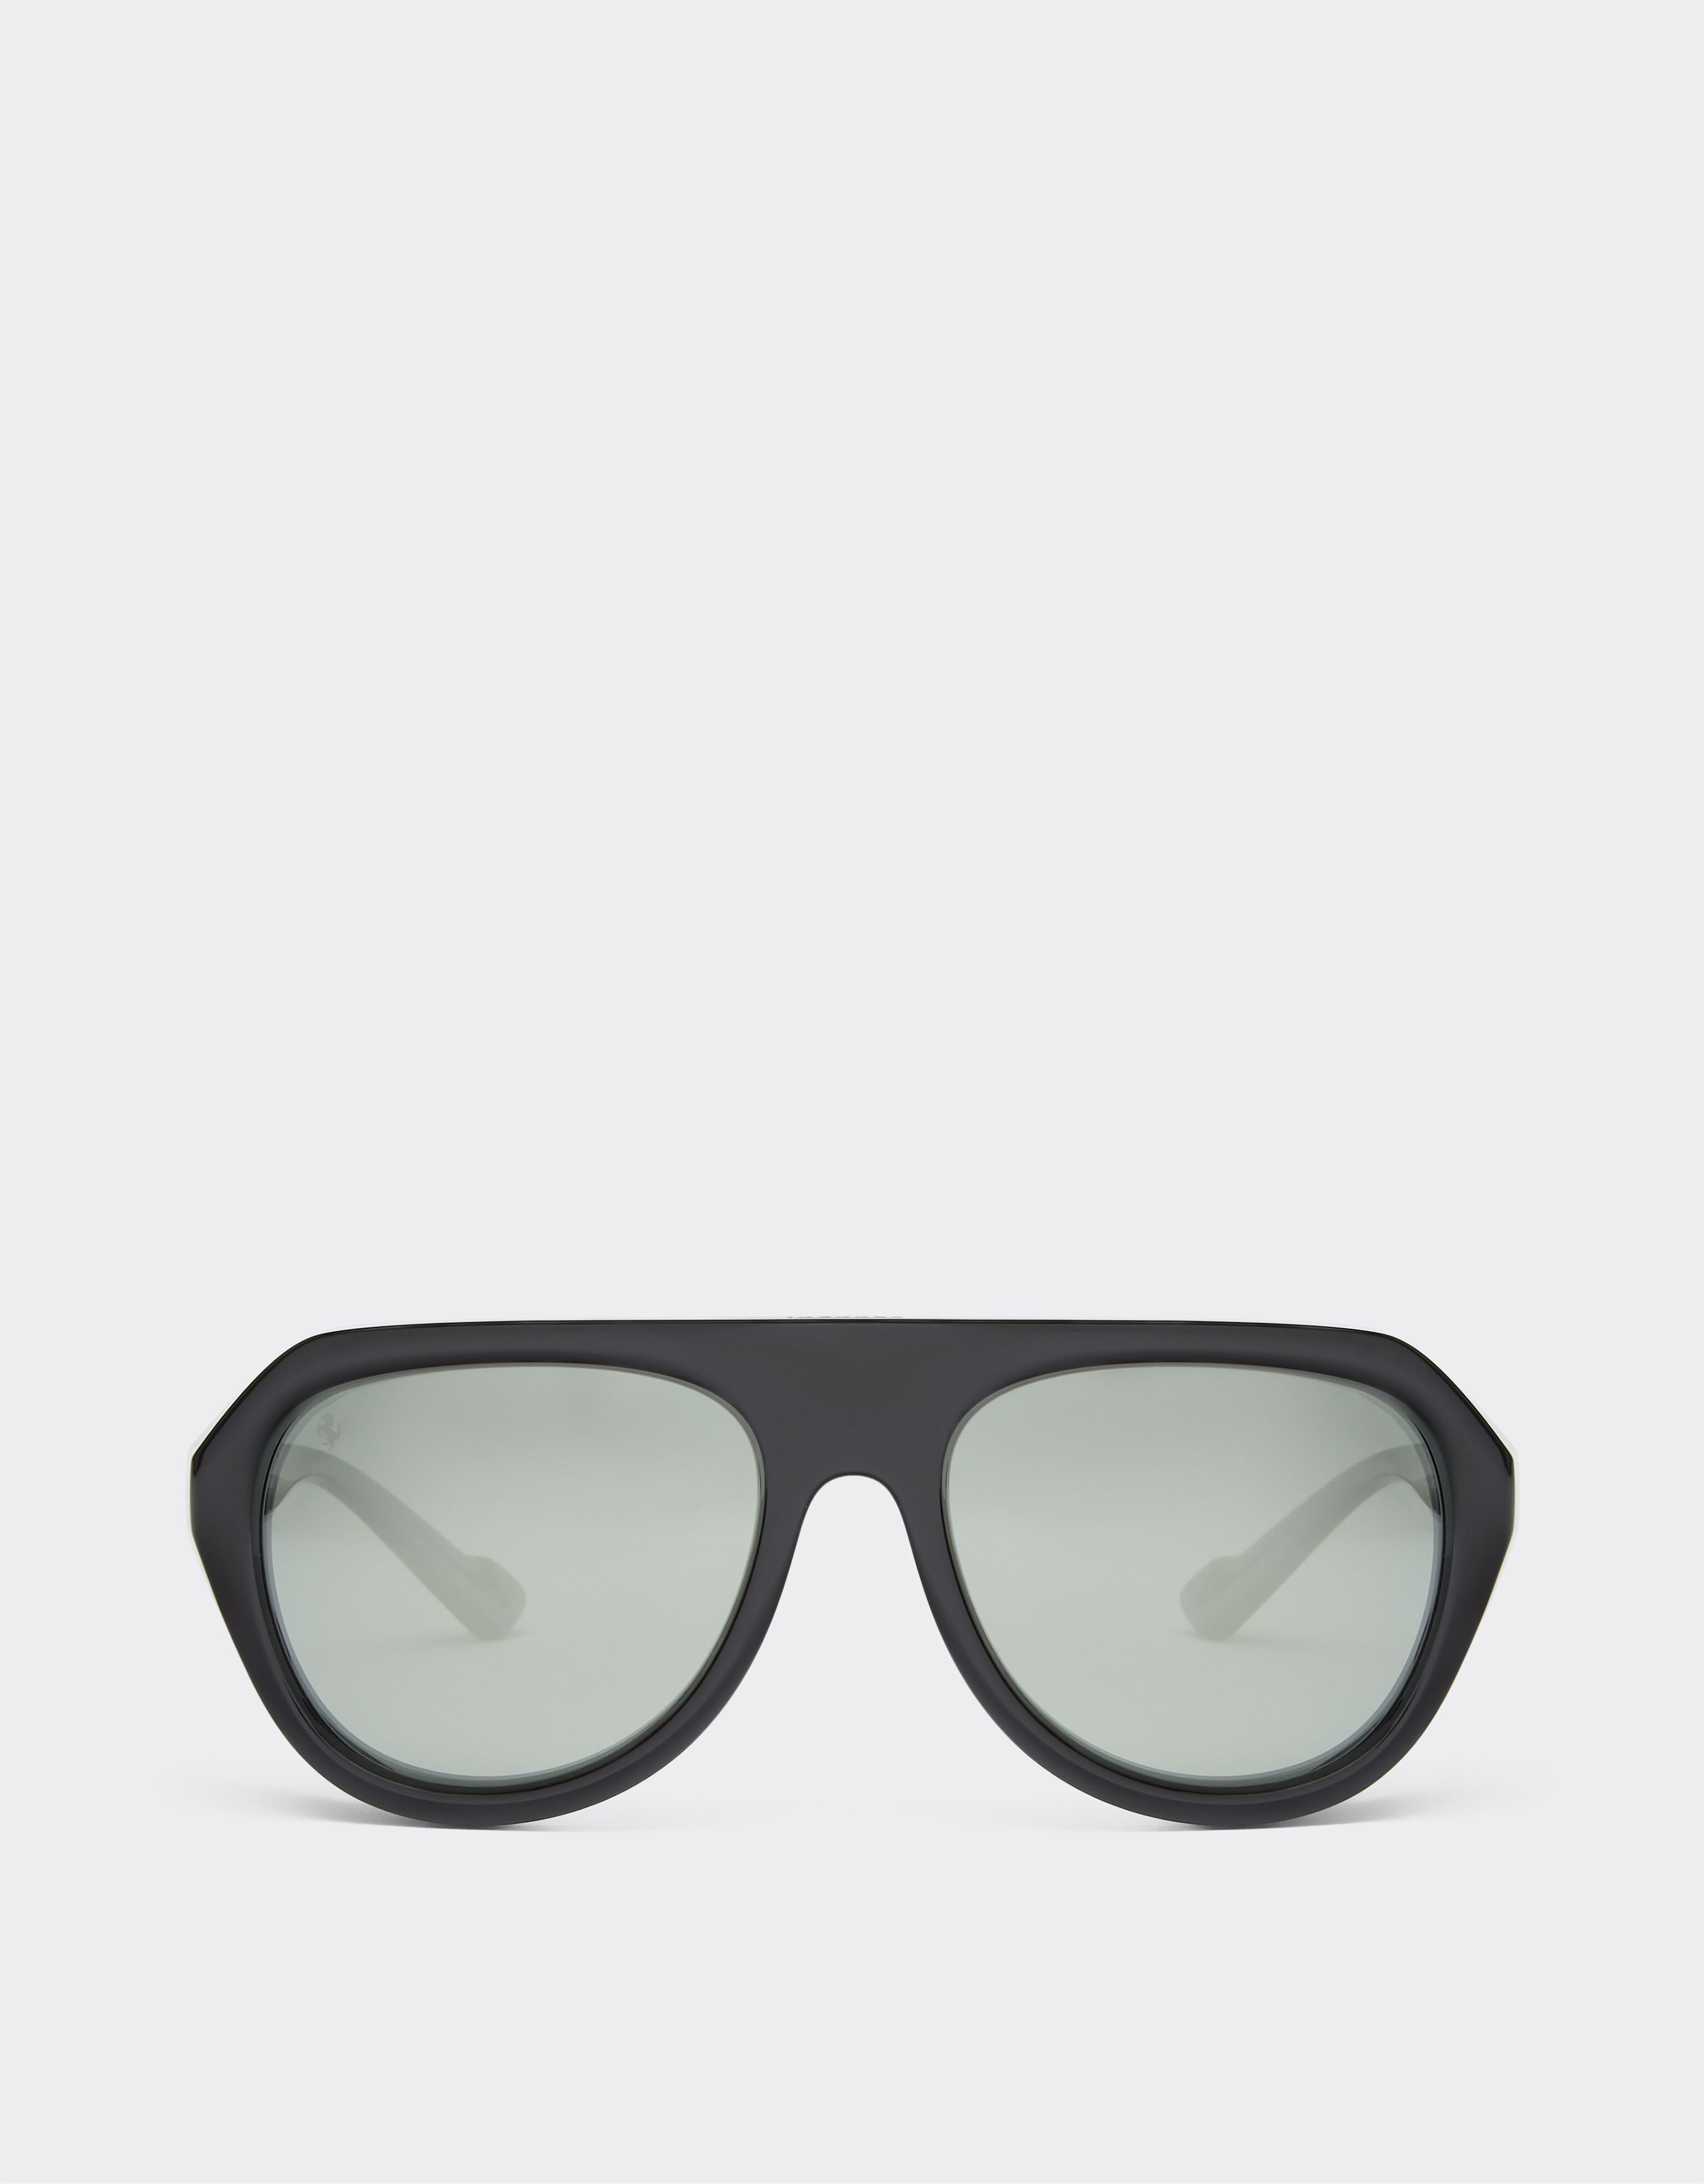 Ferrari Ferrari black sunglasses with leather details and polarised mirror lenses Ingrid F1255f